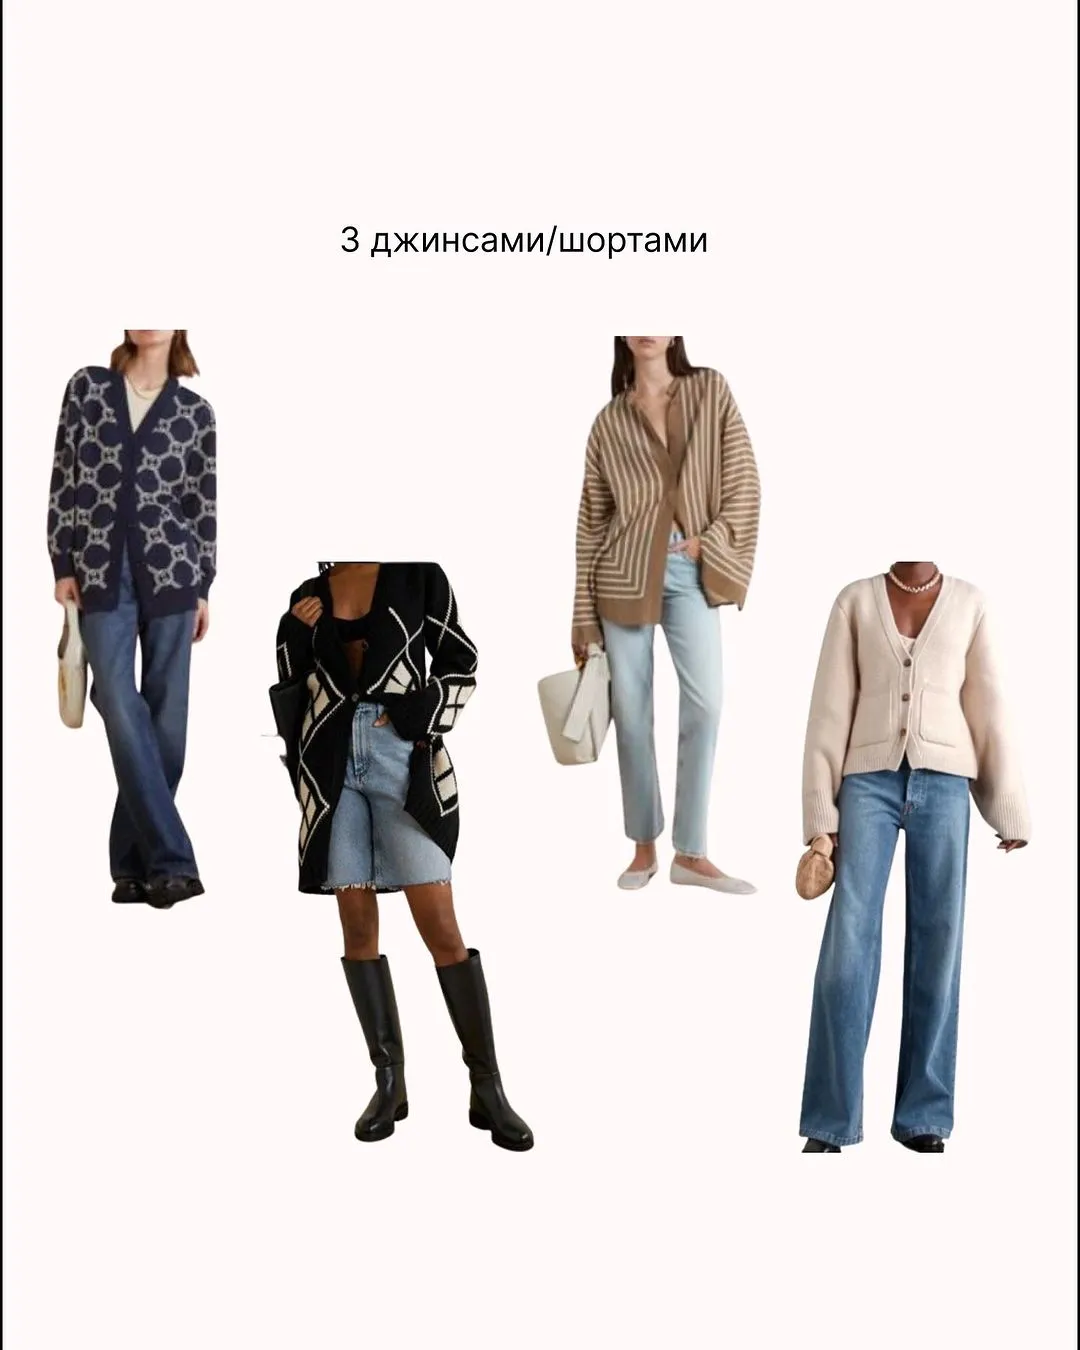 Кардигани з джинсами і шортами  / Фото stylist.viktorova